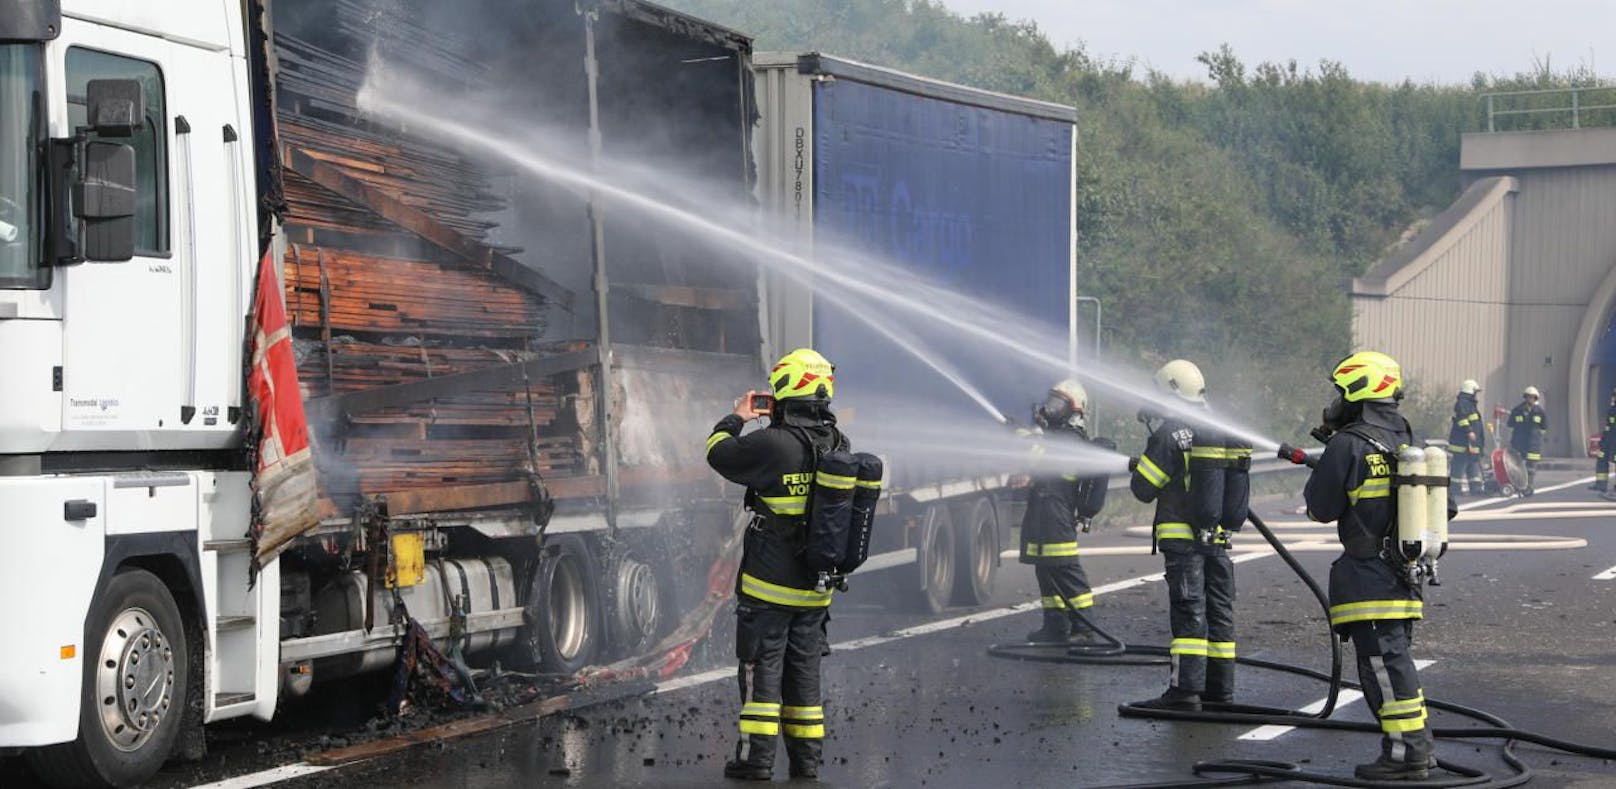 Holz geladen: Lastwagen brannte auf Autobahn aus